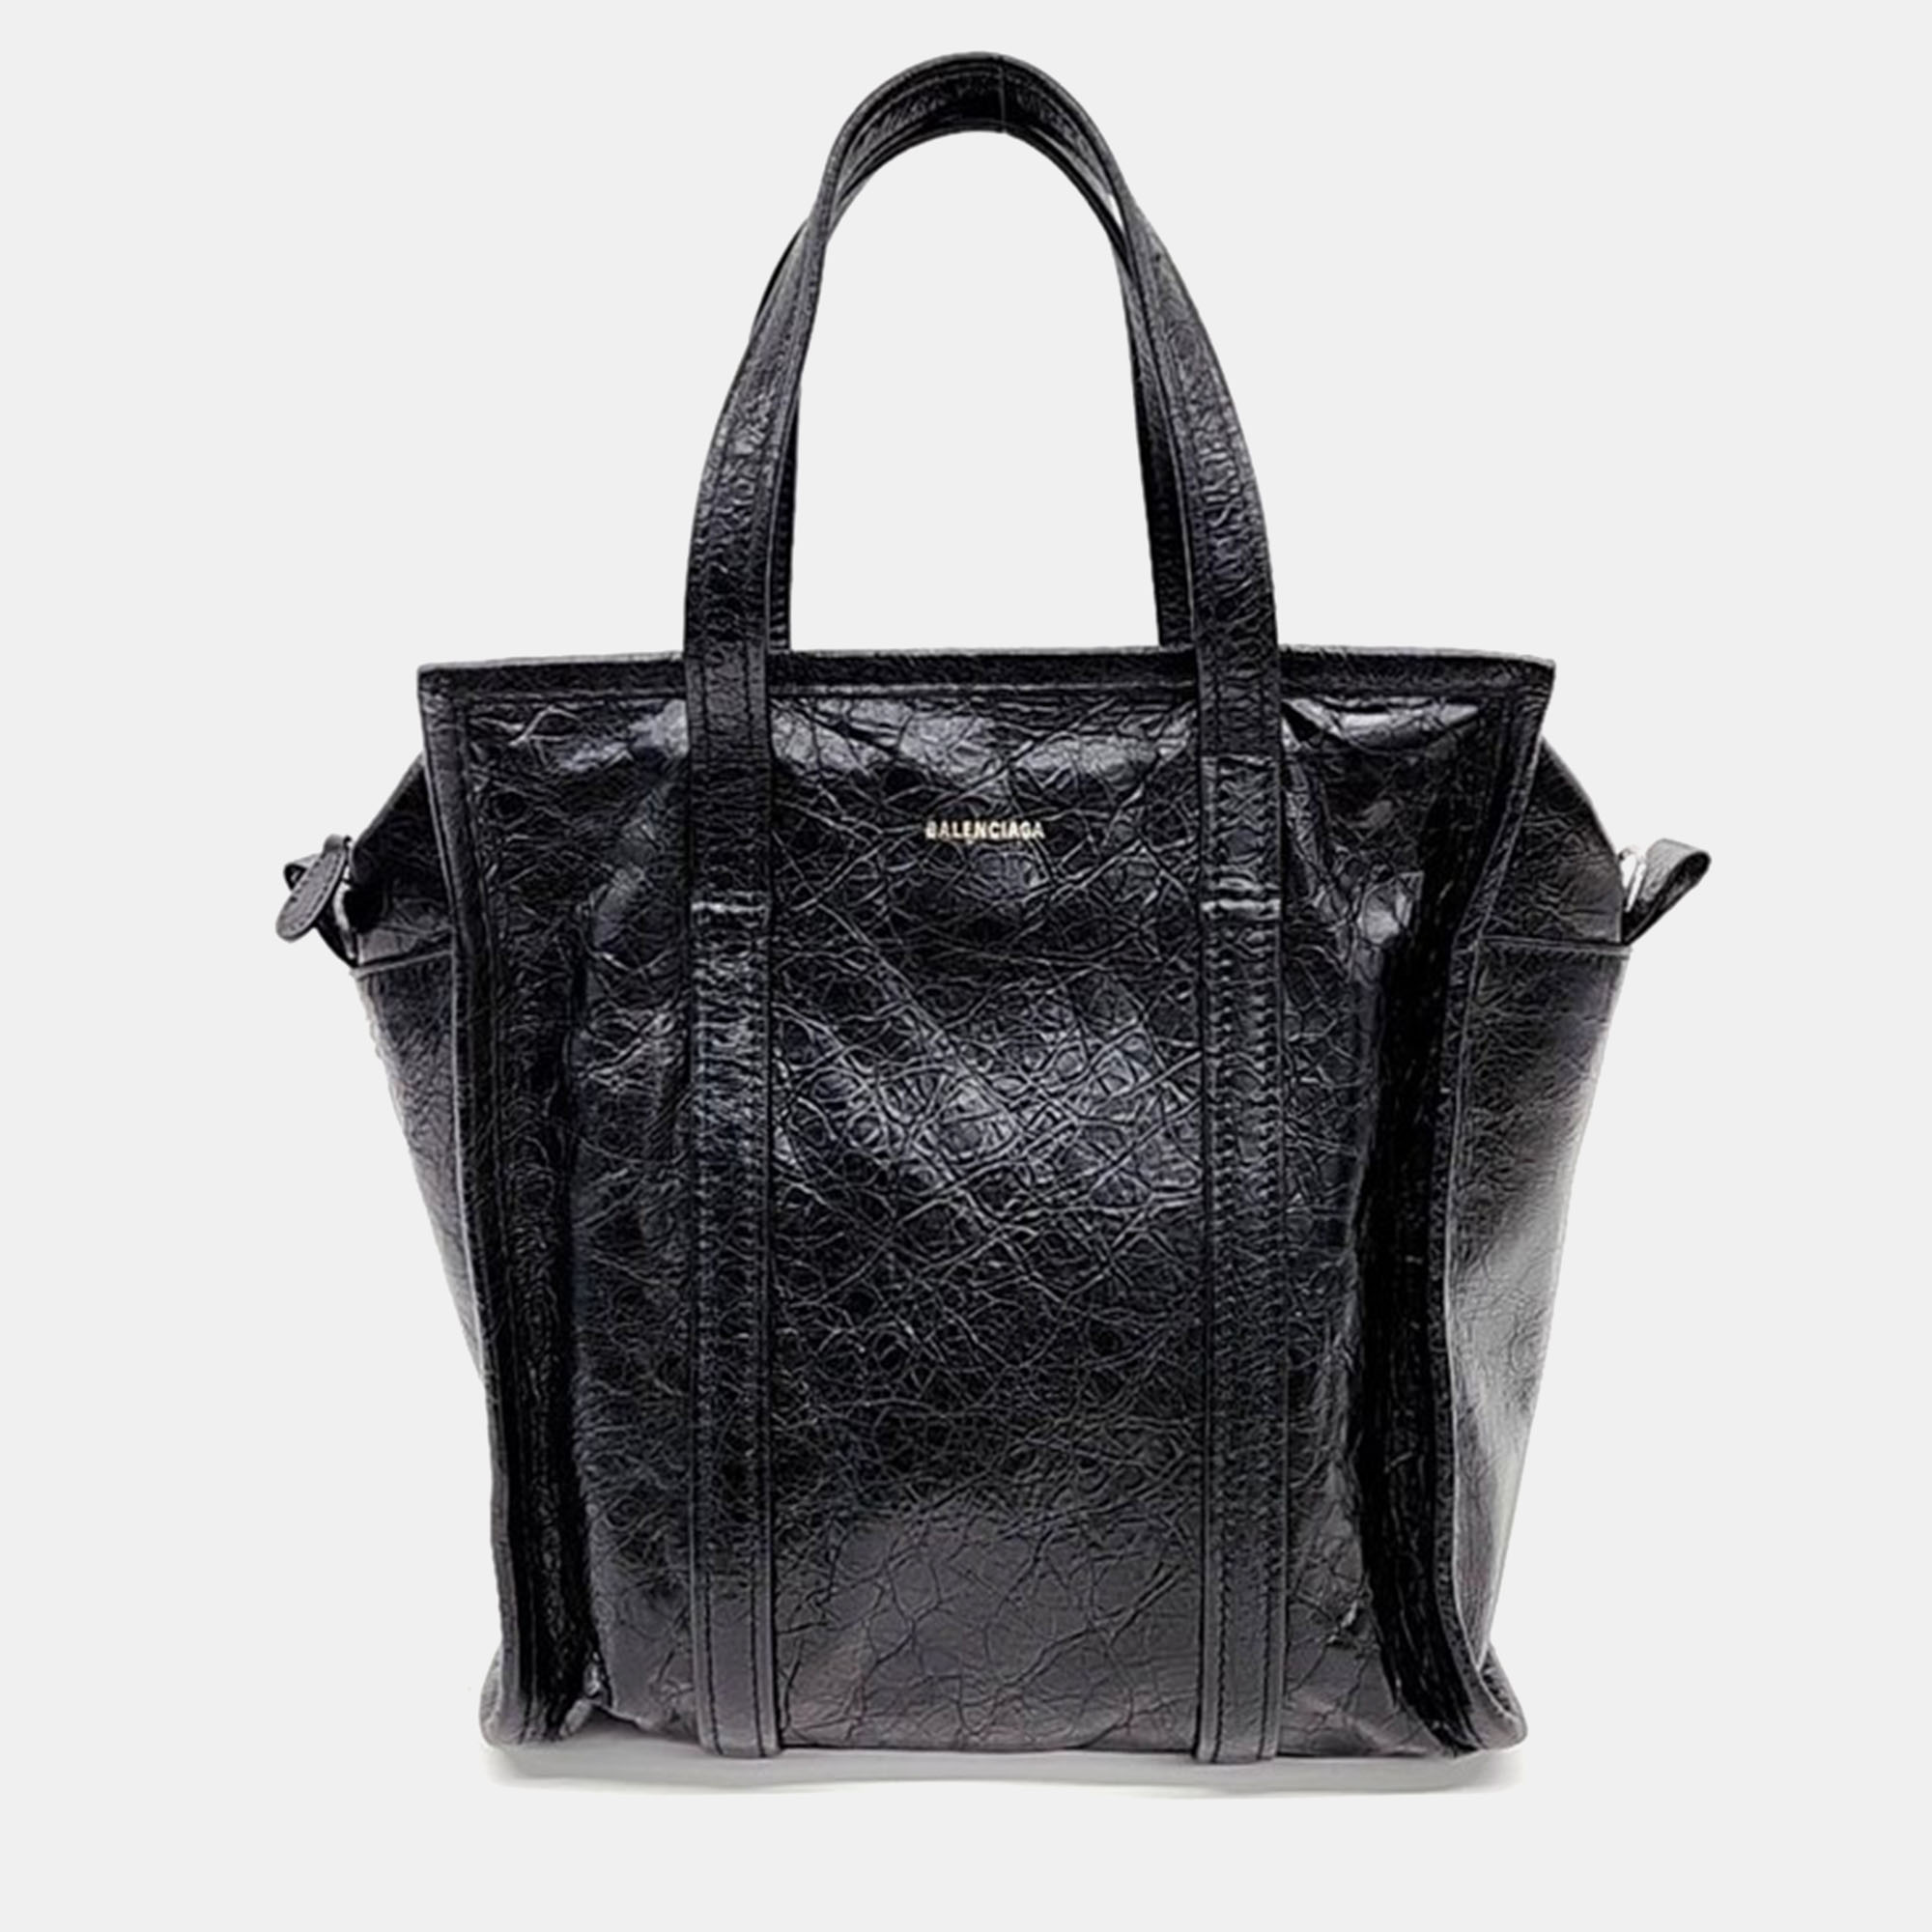 Balenciaga black leather bazar tote bag